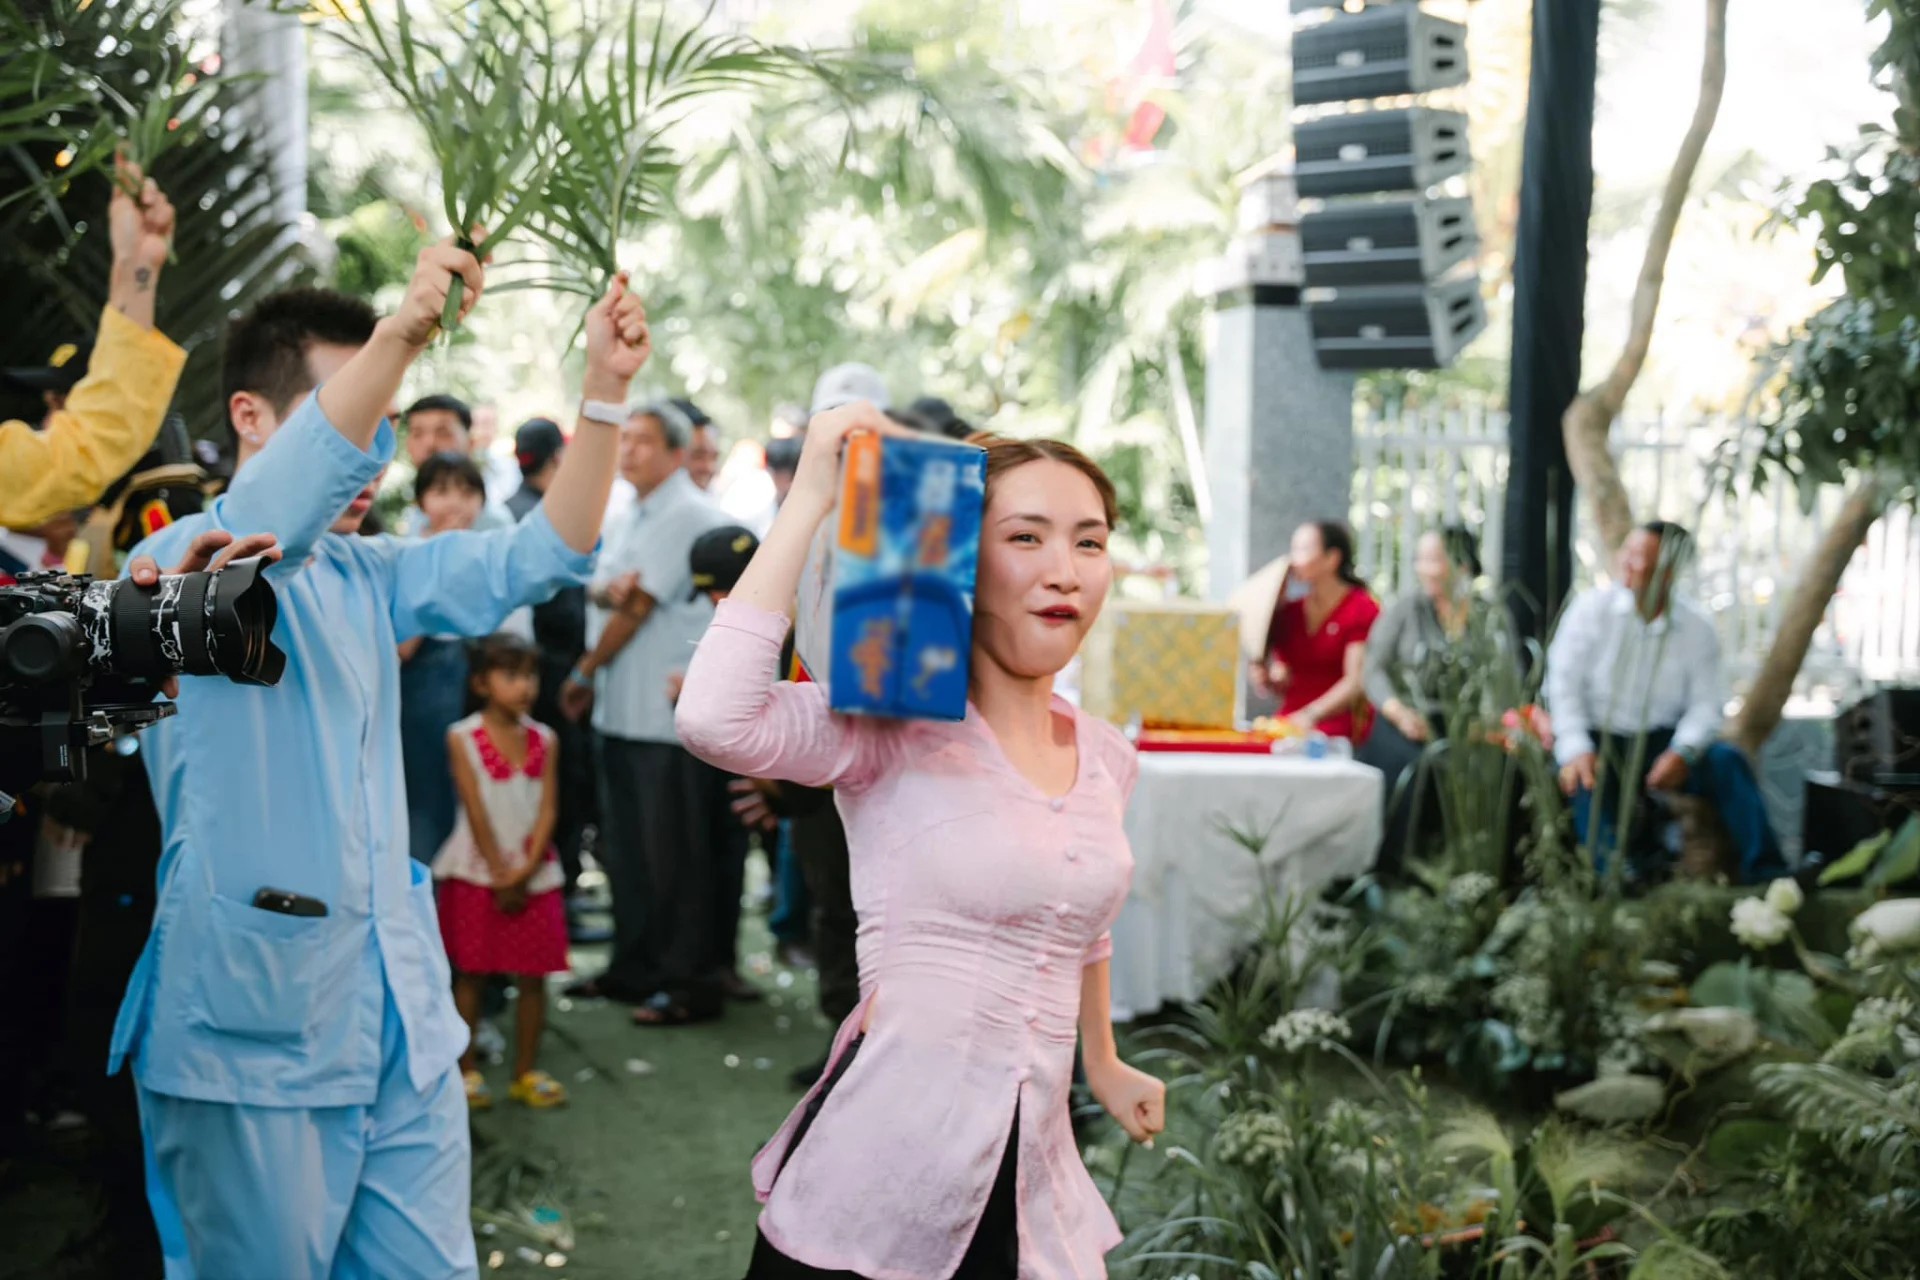 Hành động "lầy lội" của Hòa Minzy trong đám cưới, khán giả phản ánh: "Hết vui, lố lăng rồi" - 1